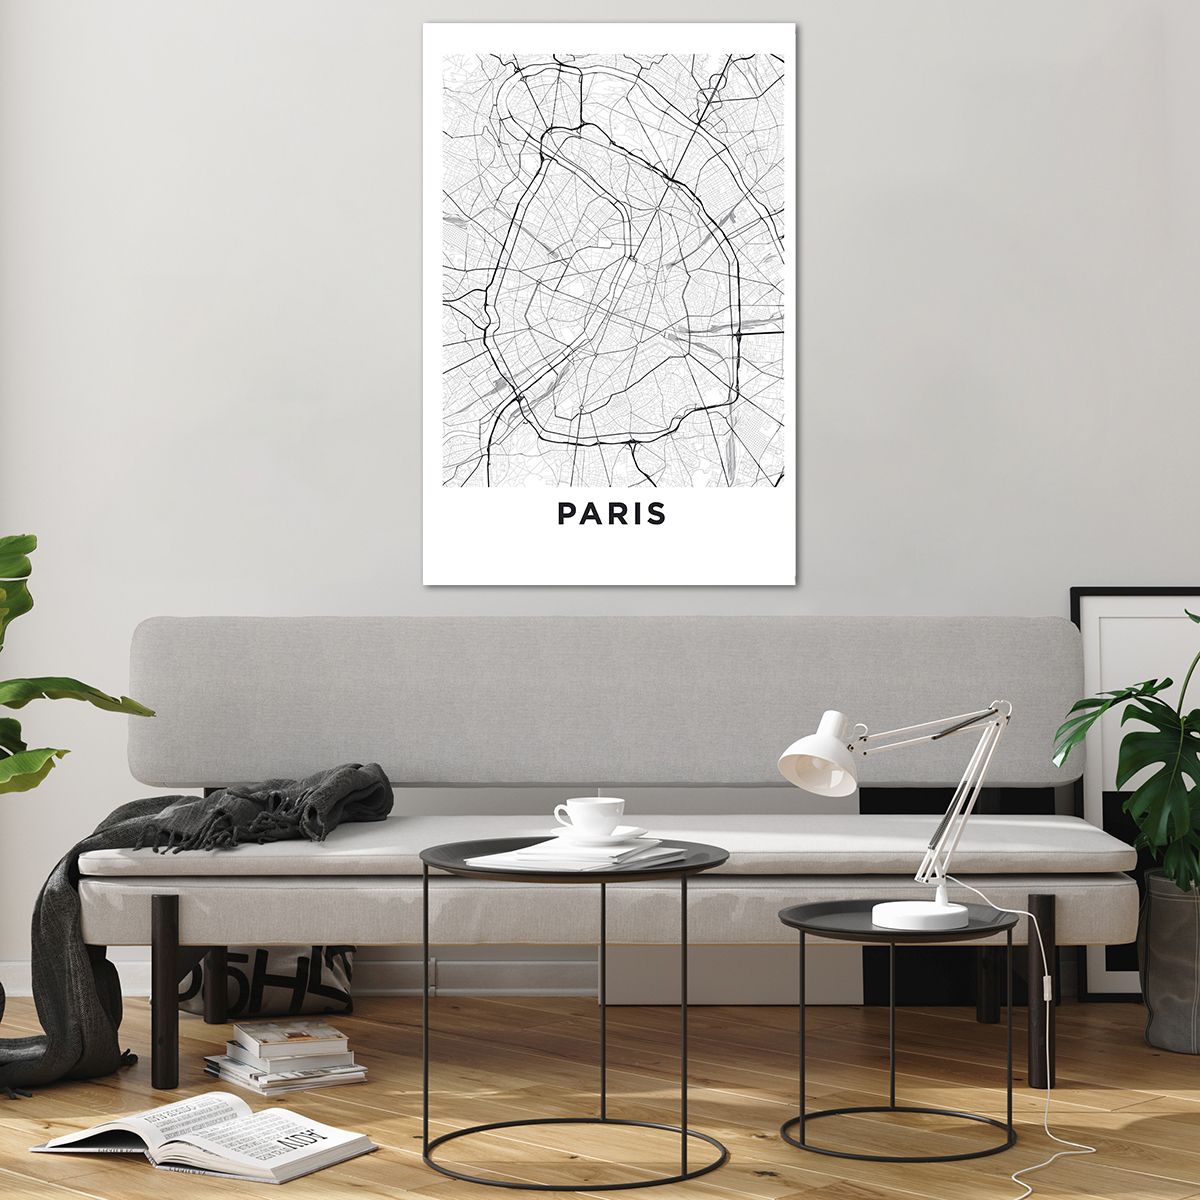 Obrazy na szkle Miasto, Obrazy na szkle Mapa Miasta, Obrazy na szkle Paryż, Obrazy na szkle Grafika, Obrazy na szkle Francja